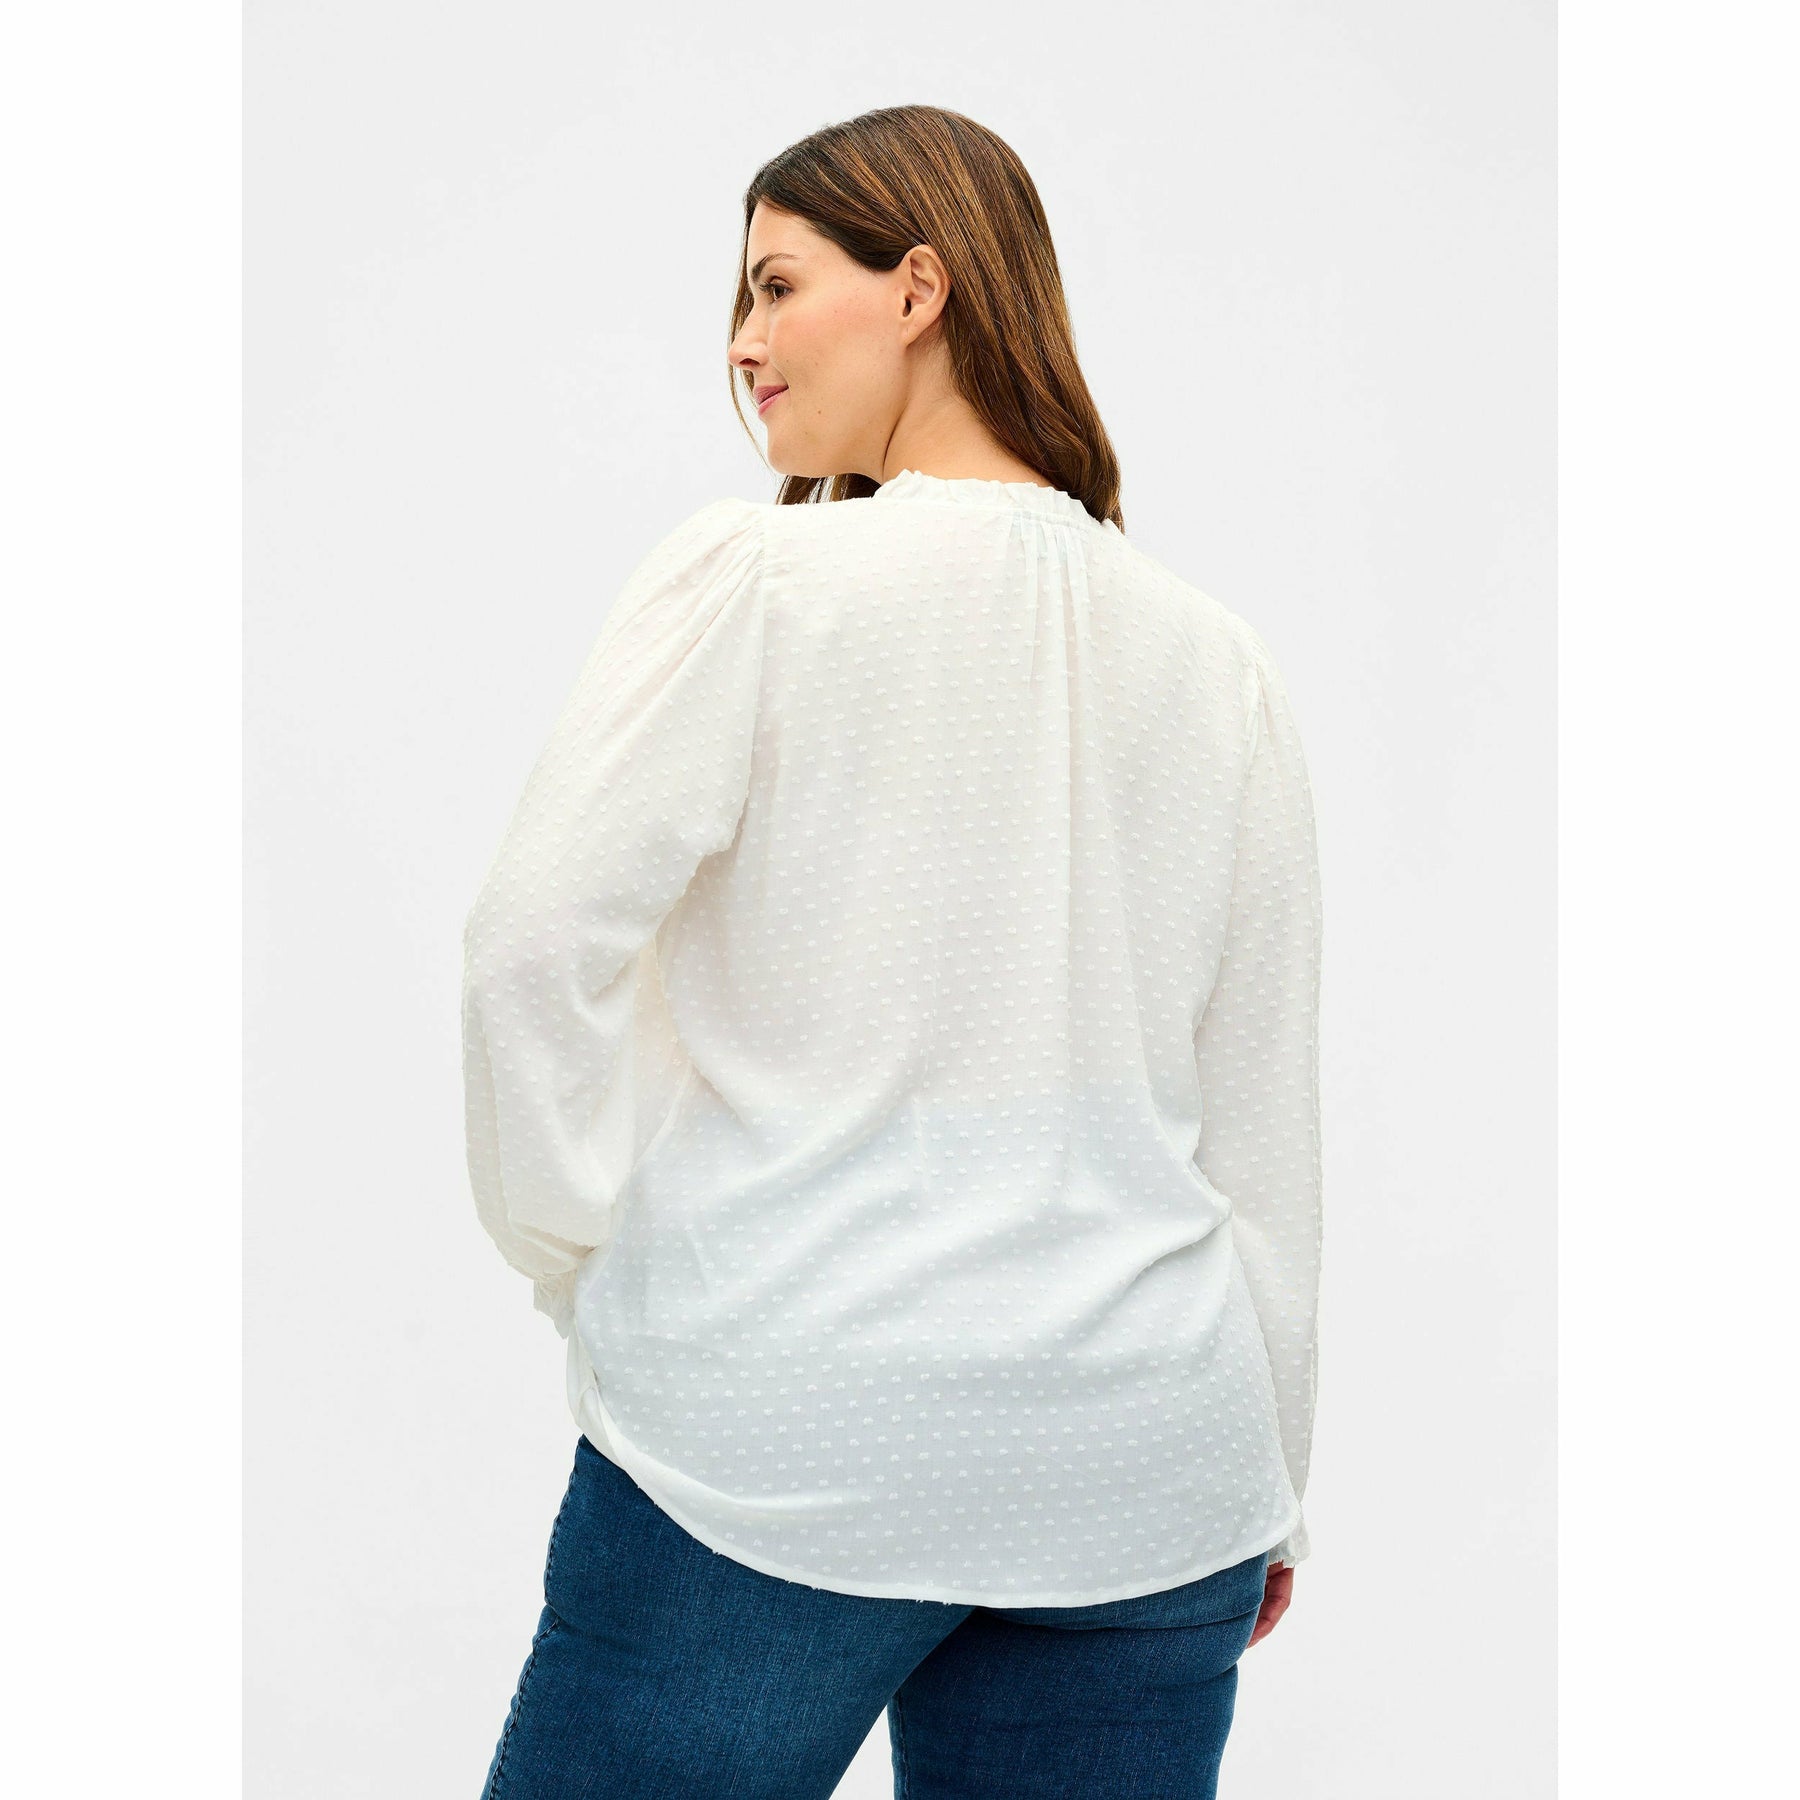 Zizzi Long Sleeve Blouse in White - Wardrobe Plus